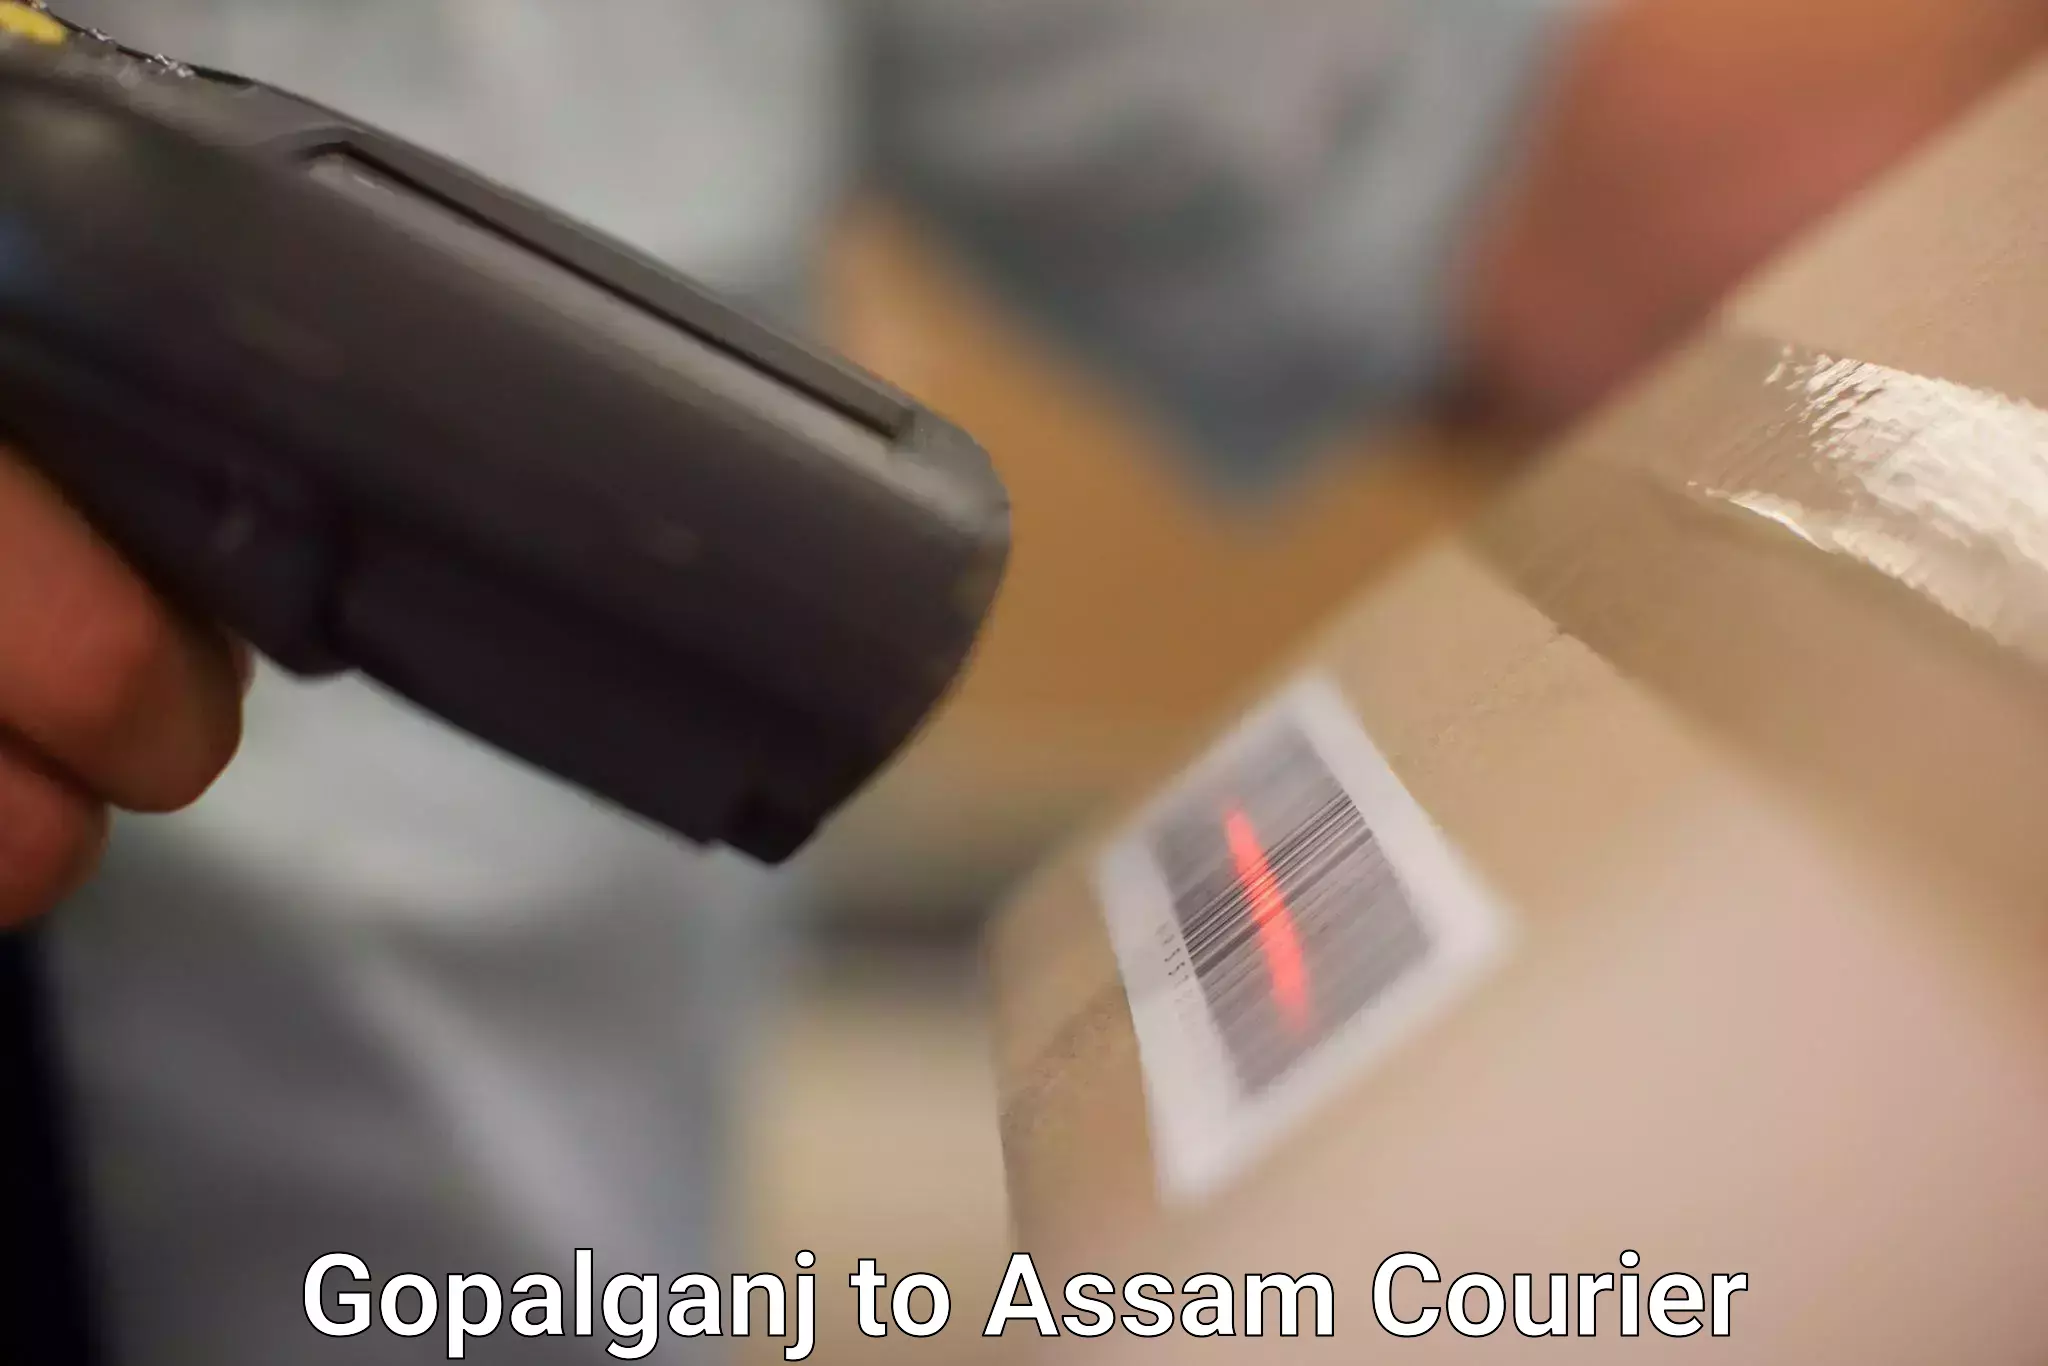 Affordable parcel service Gopalganj to Assam